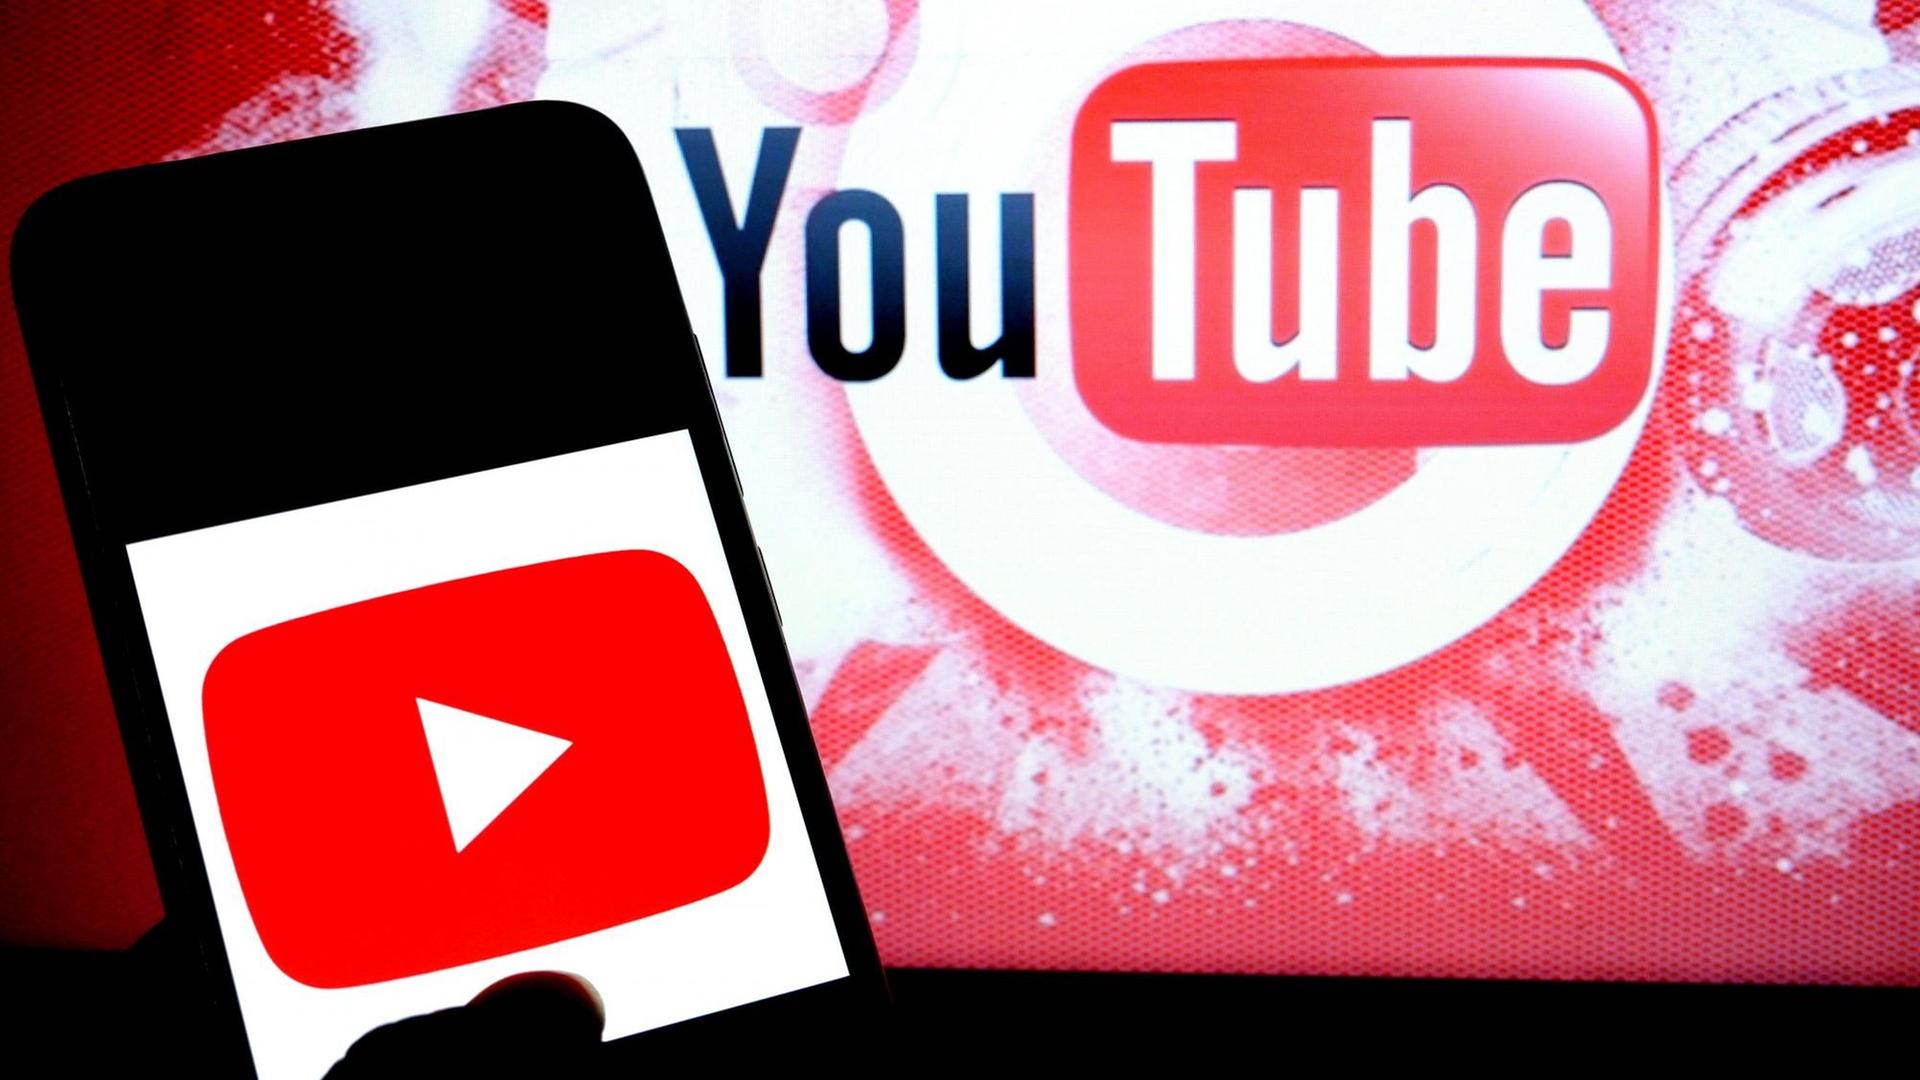 Handy mit Youtube-Logo vor einer Leinwand, die ebenfalls das Youtube-Logo zeigt